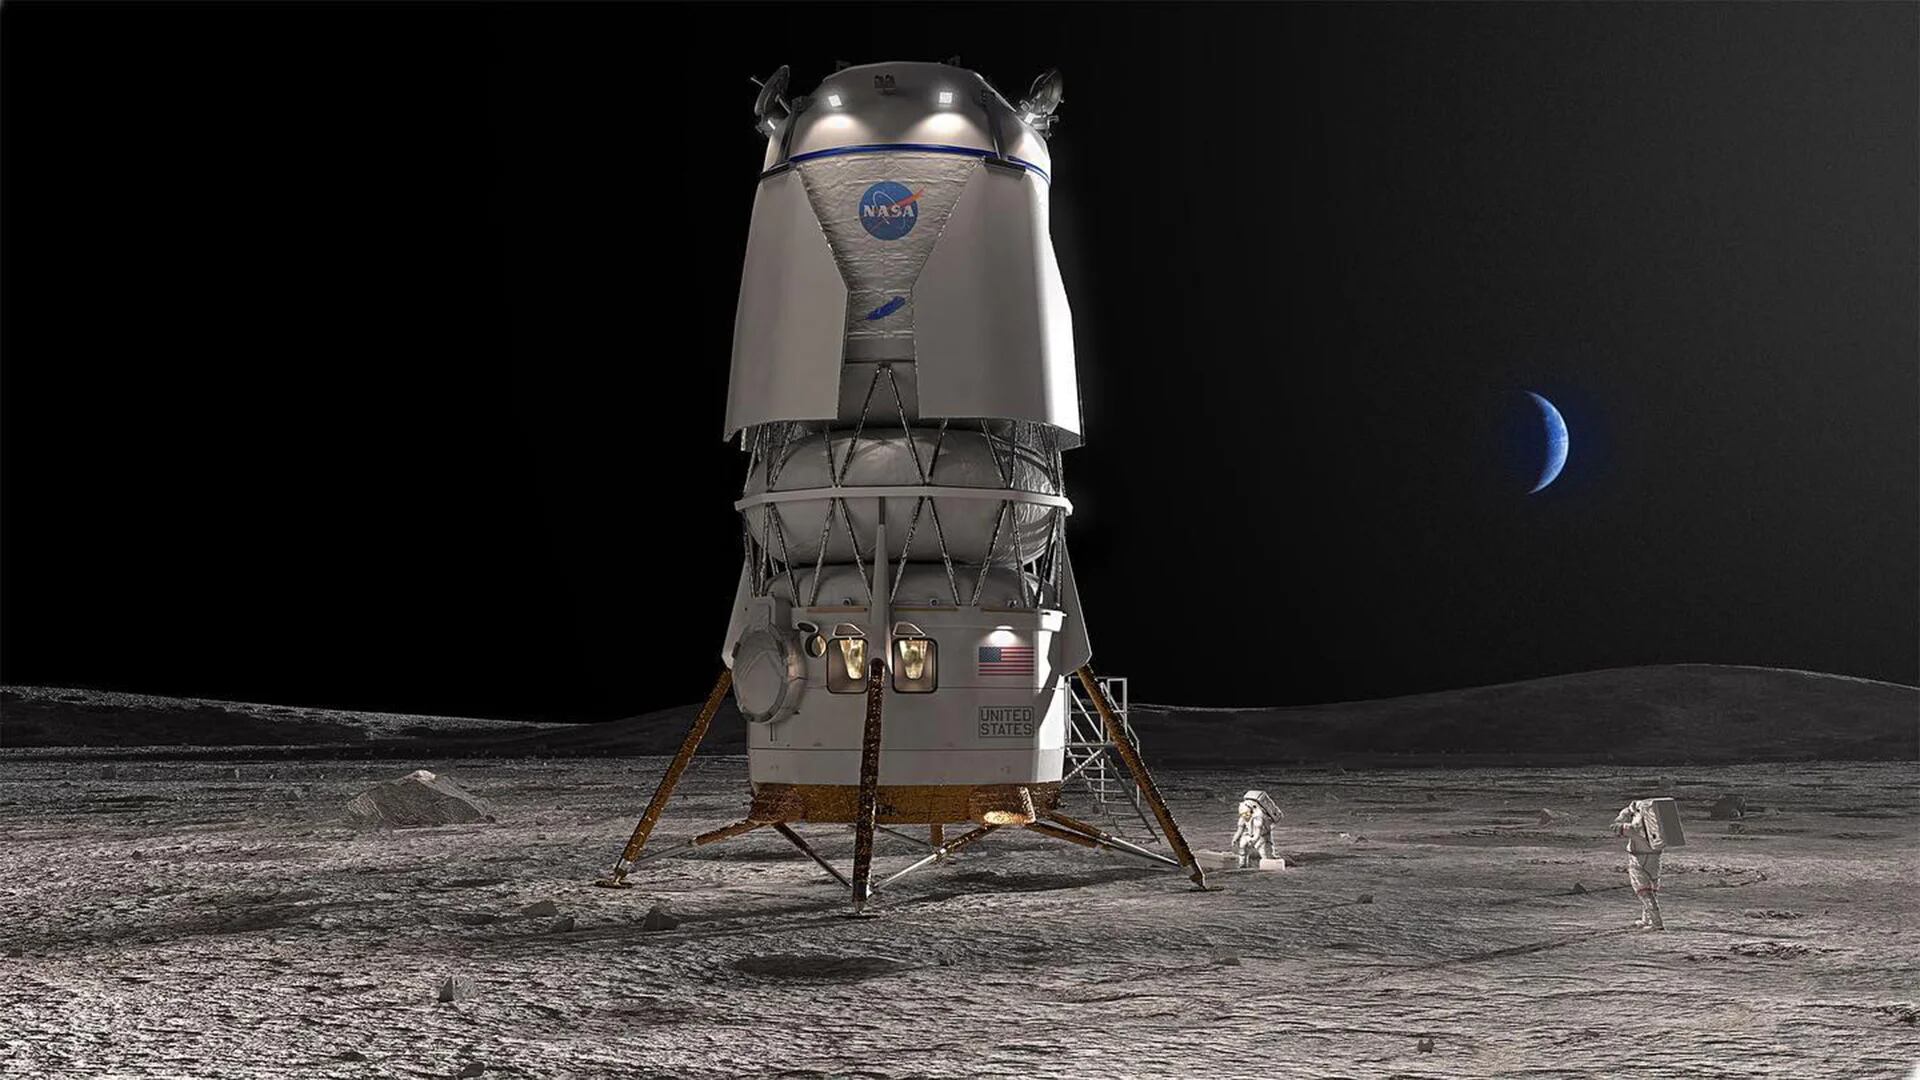 La NASA eligió a la empresa Blue Origin de Jeff Bezos para llevar astronautas a la Luna en la misión Artemis